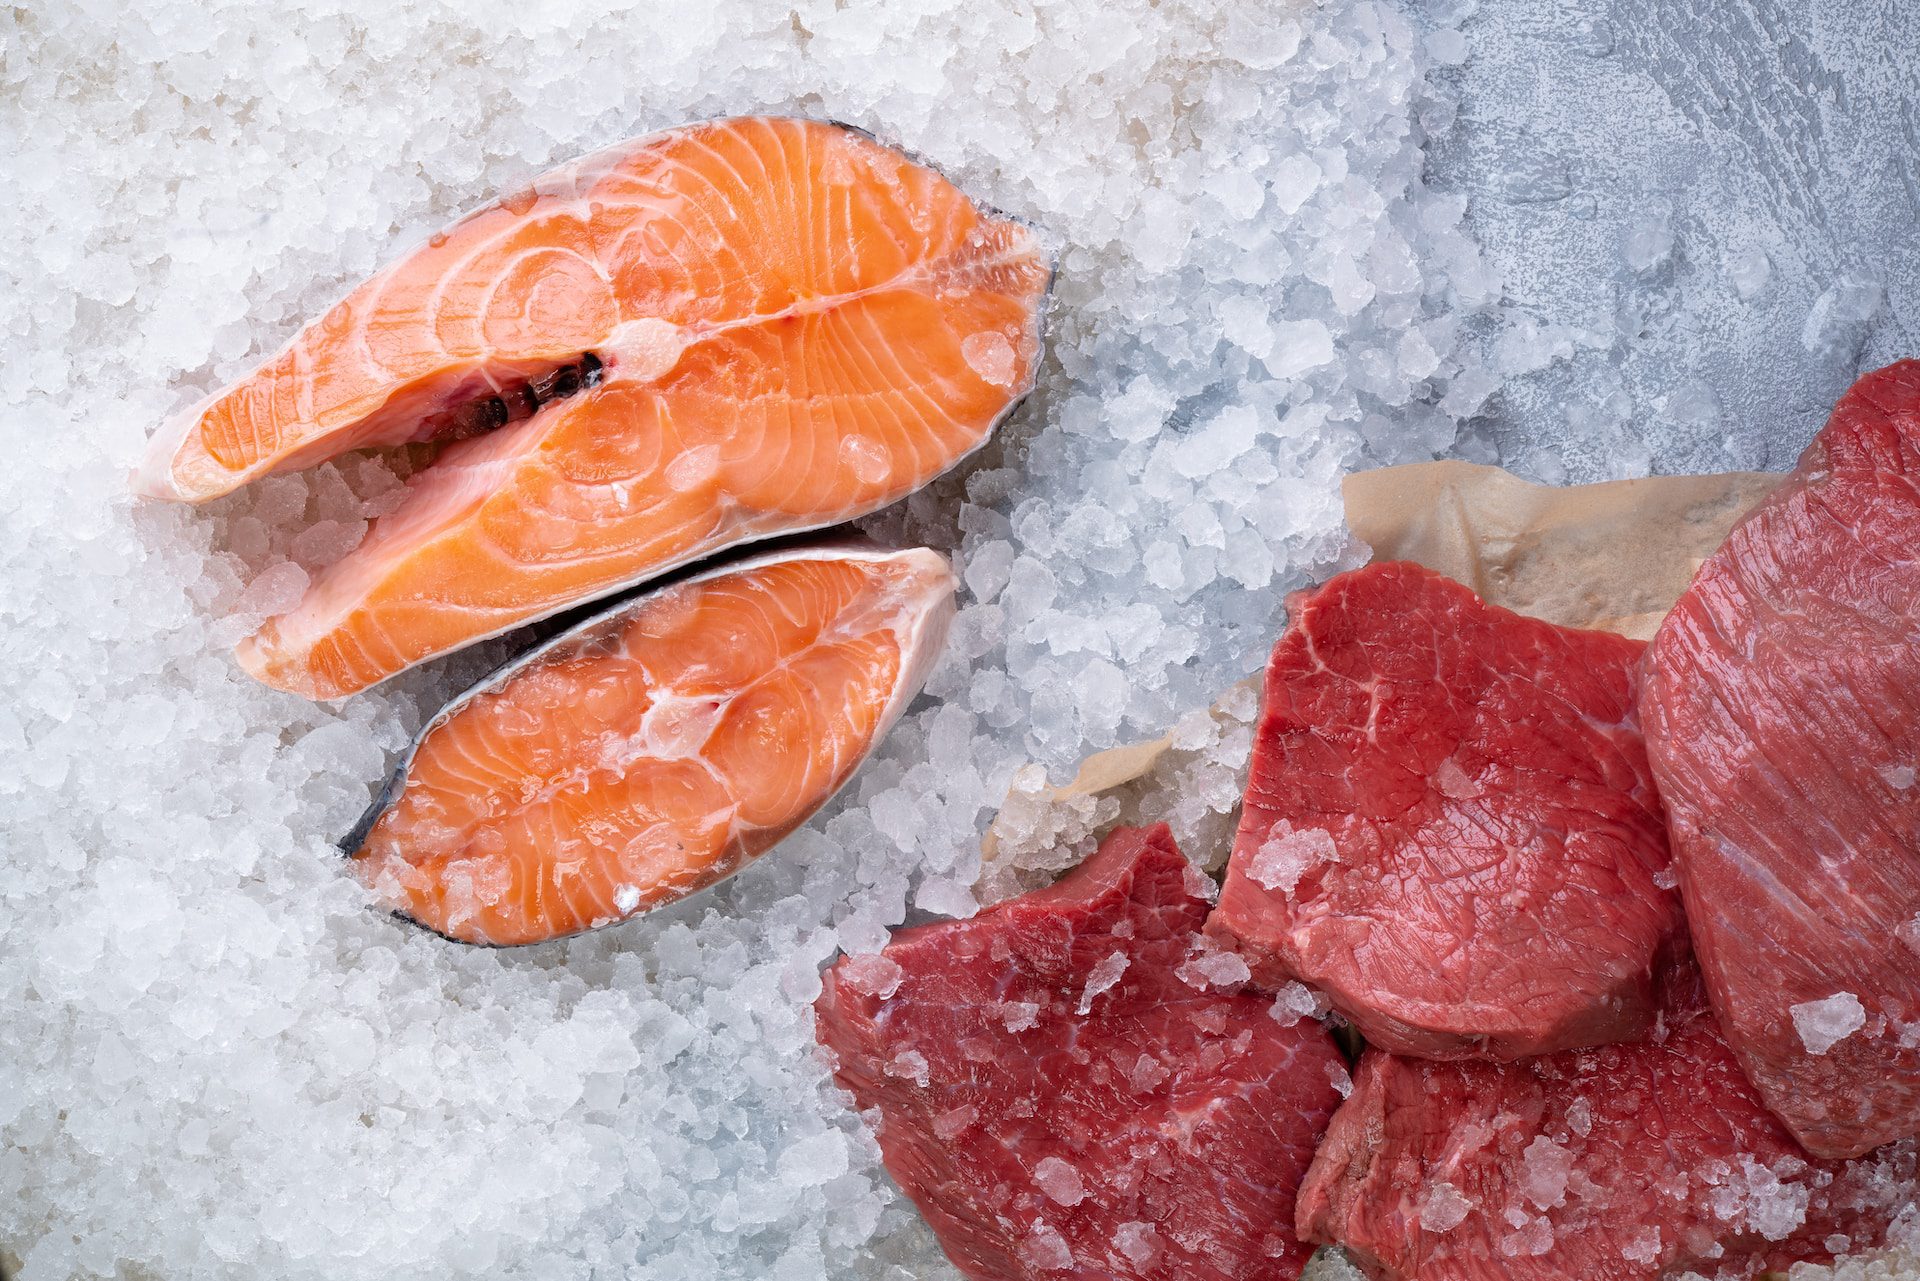 Can Shih Tzu's Safely Enjoy Salmon in Their Diet